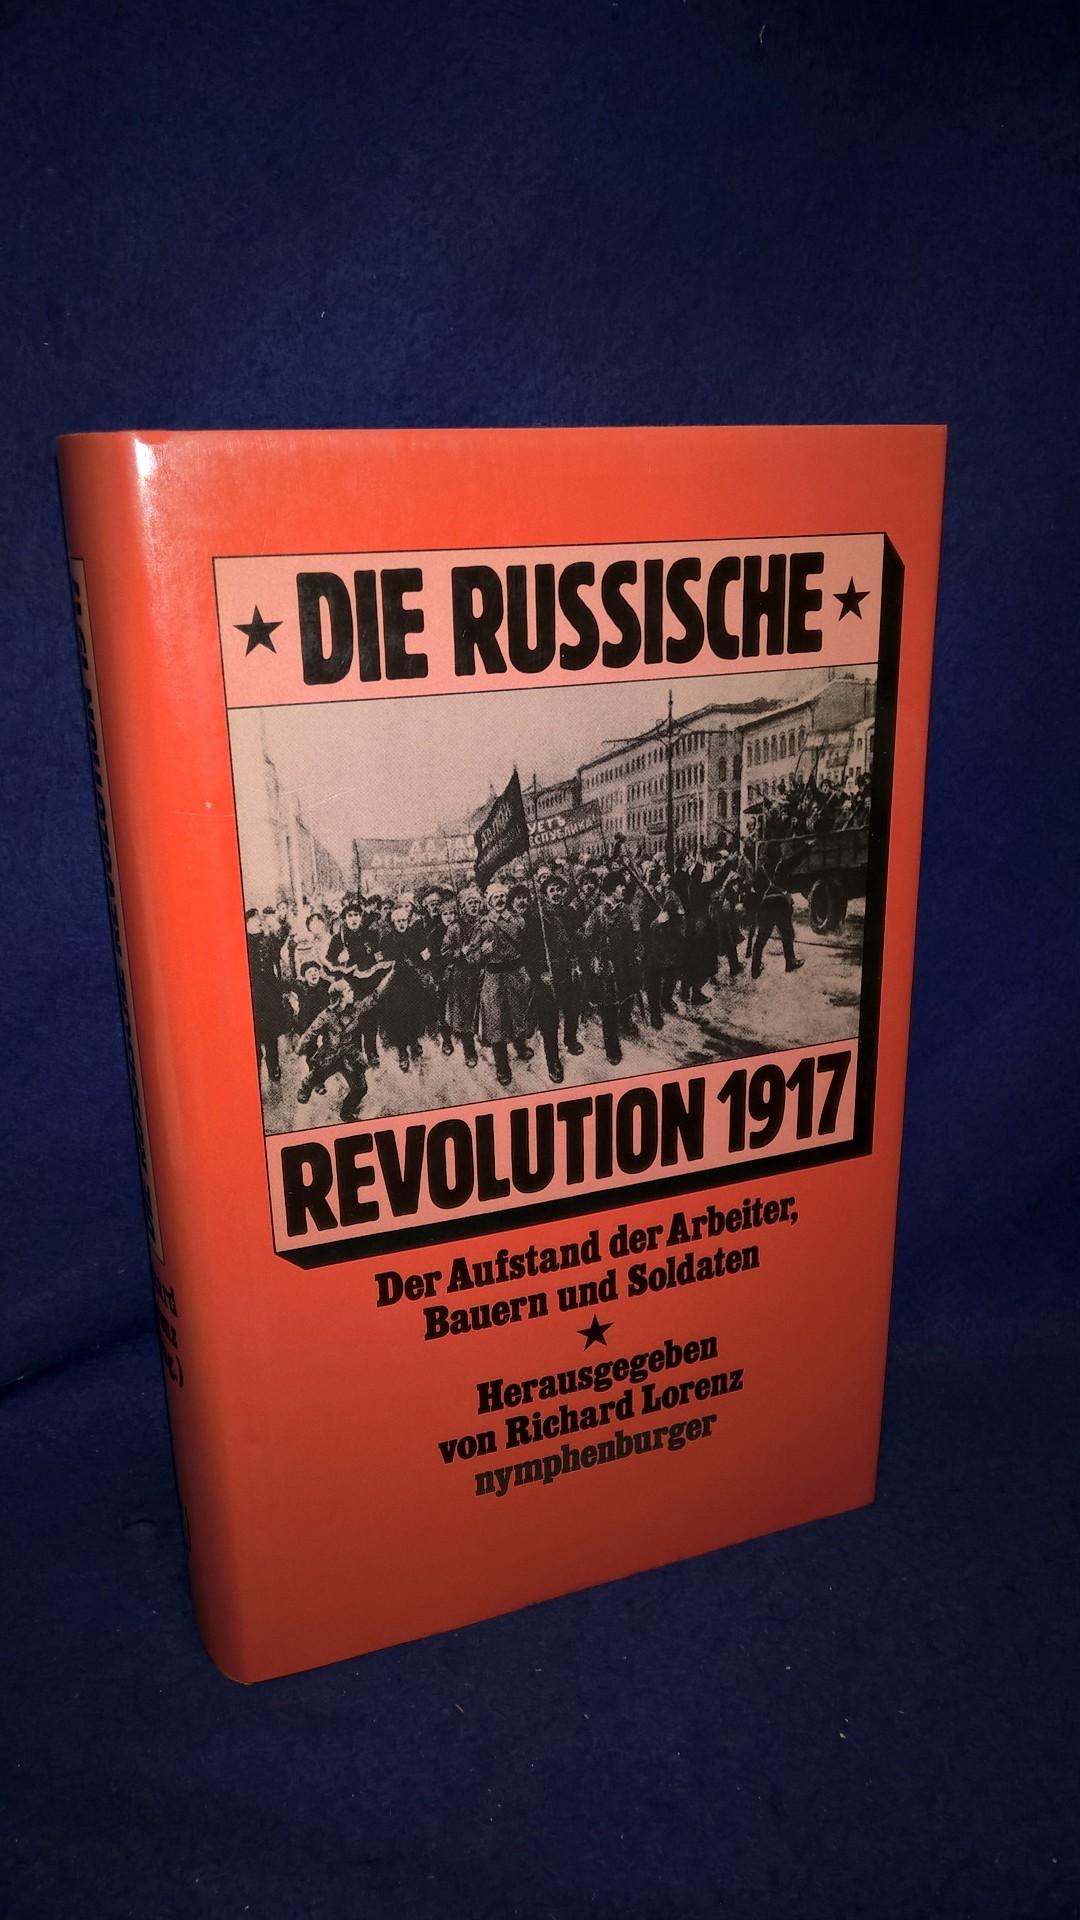 Die russische Revolution 1917. Der Aufstand der Arbeiter, Bauern und Soldaten - Eine Dokumentation. 